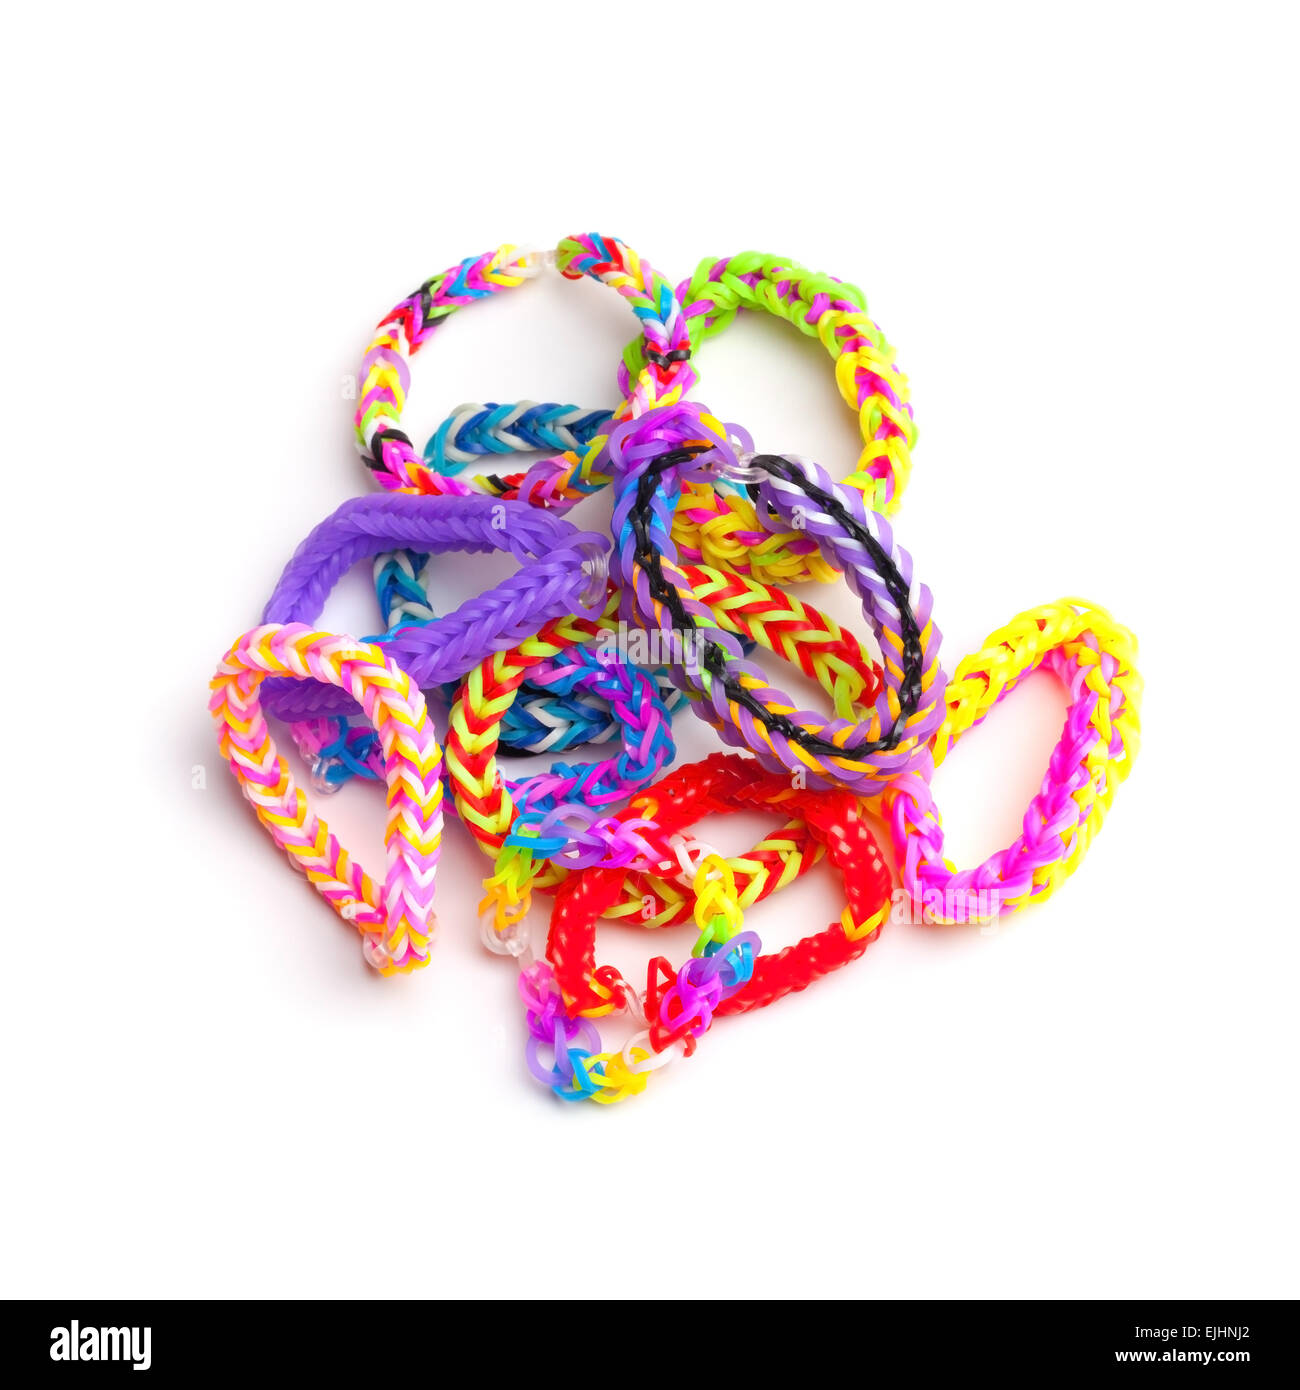 Grupo de coloridas pulseras rubber band aislado en blanco de moda, accesorios de moda adolescentes Foto de stock